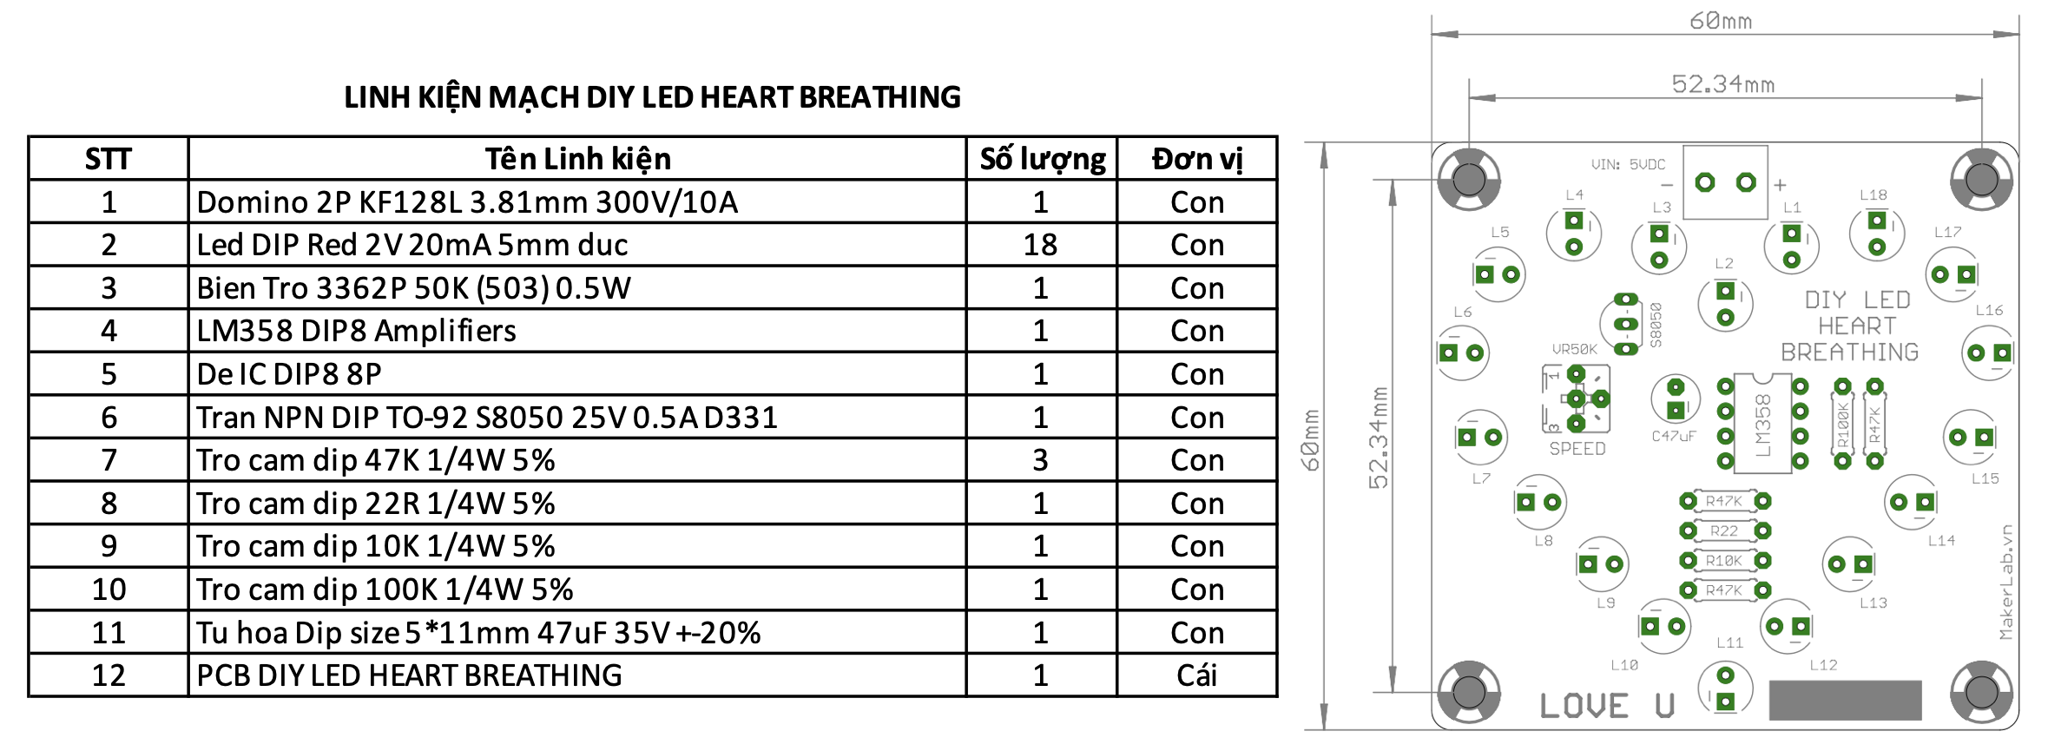 Mạch trái tim thổn thức, cân 8/3 14/2 20/10, DIY LED HEART BREATHING